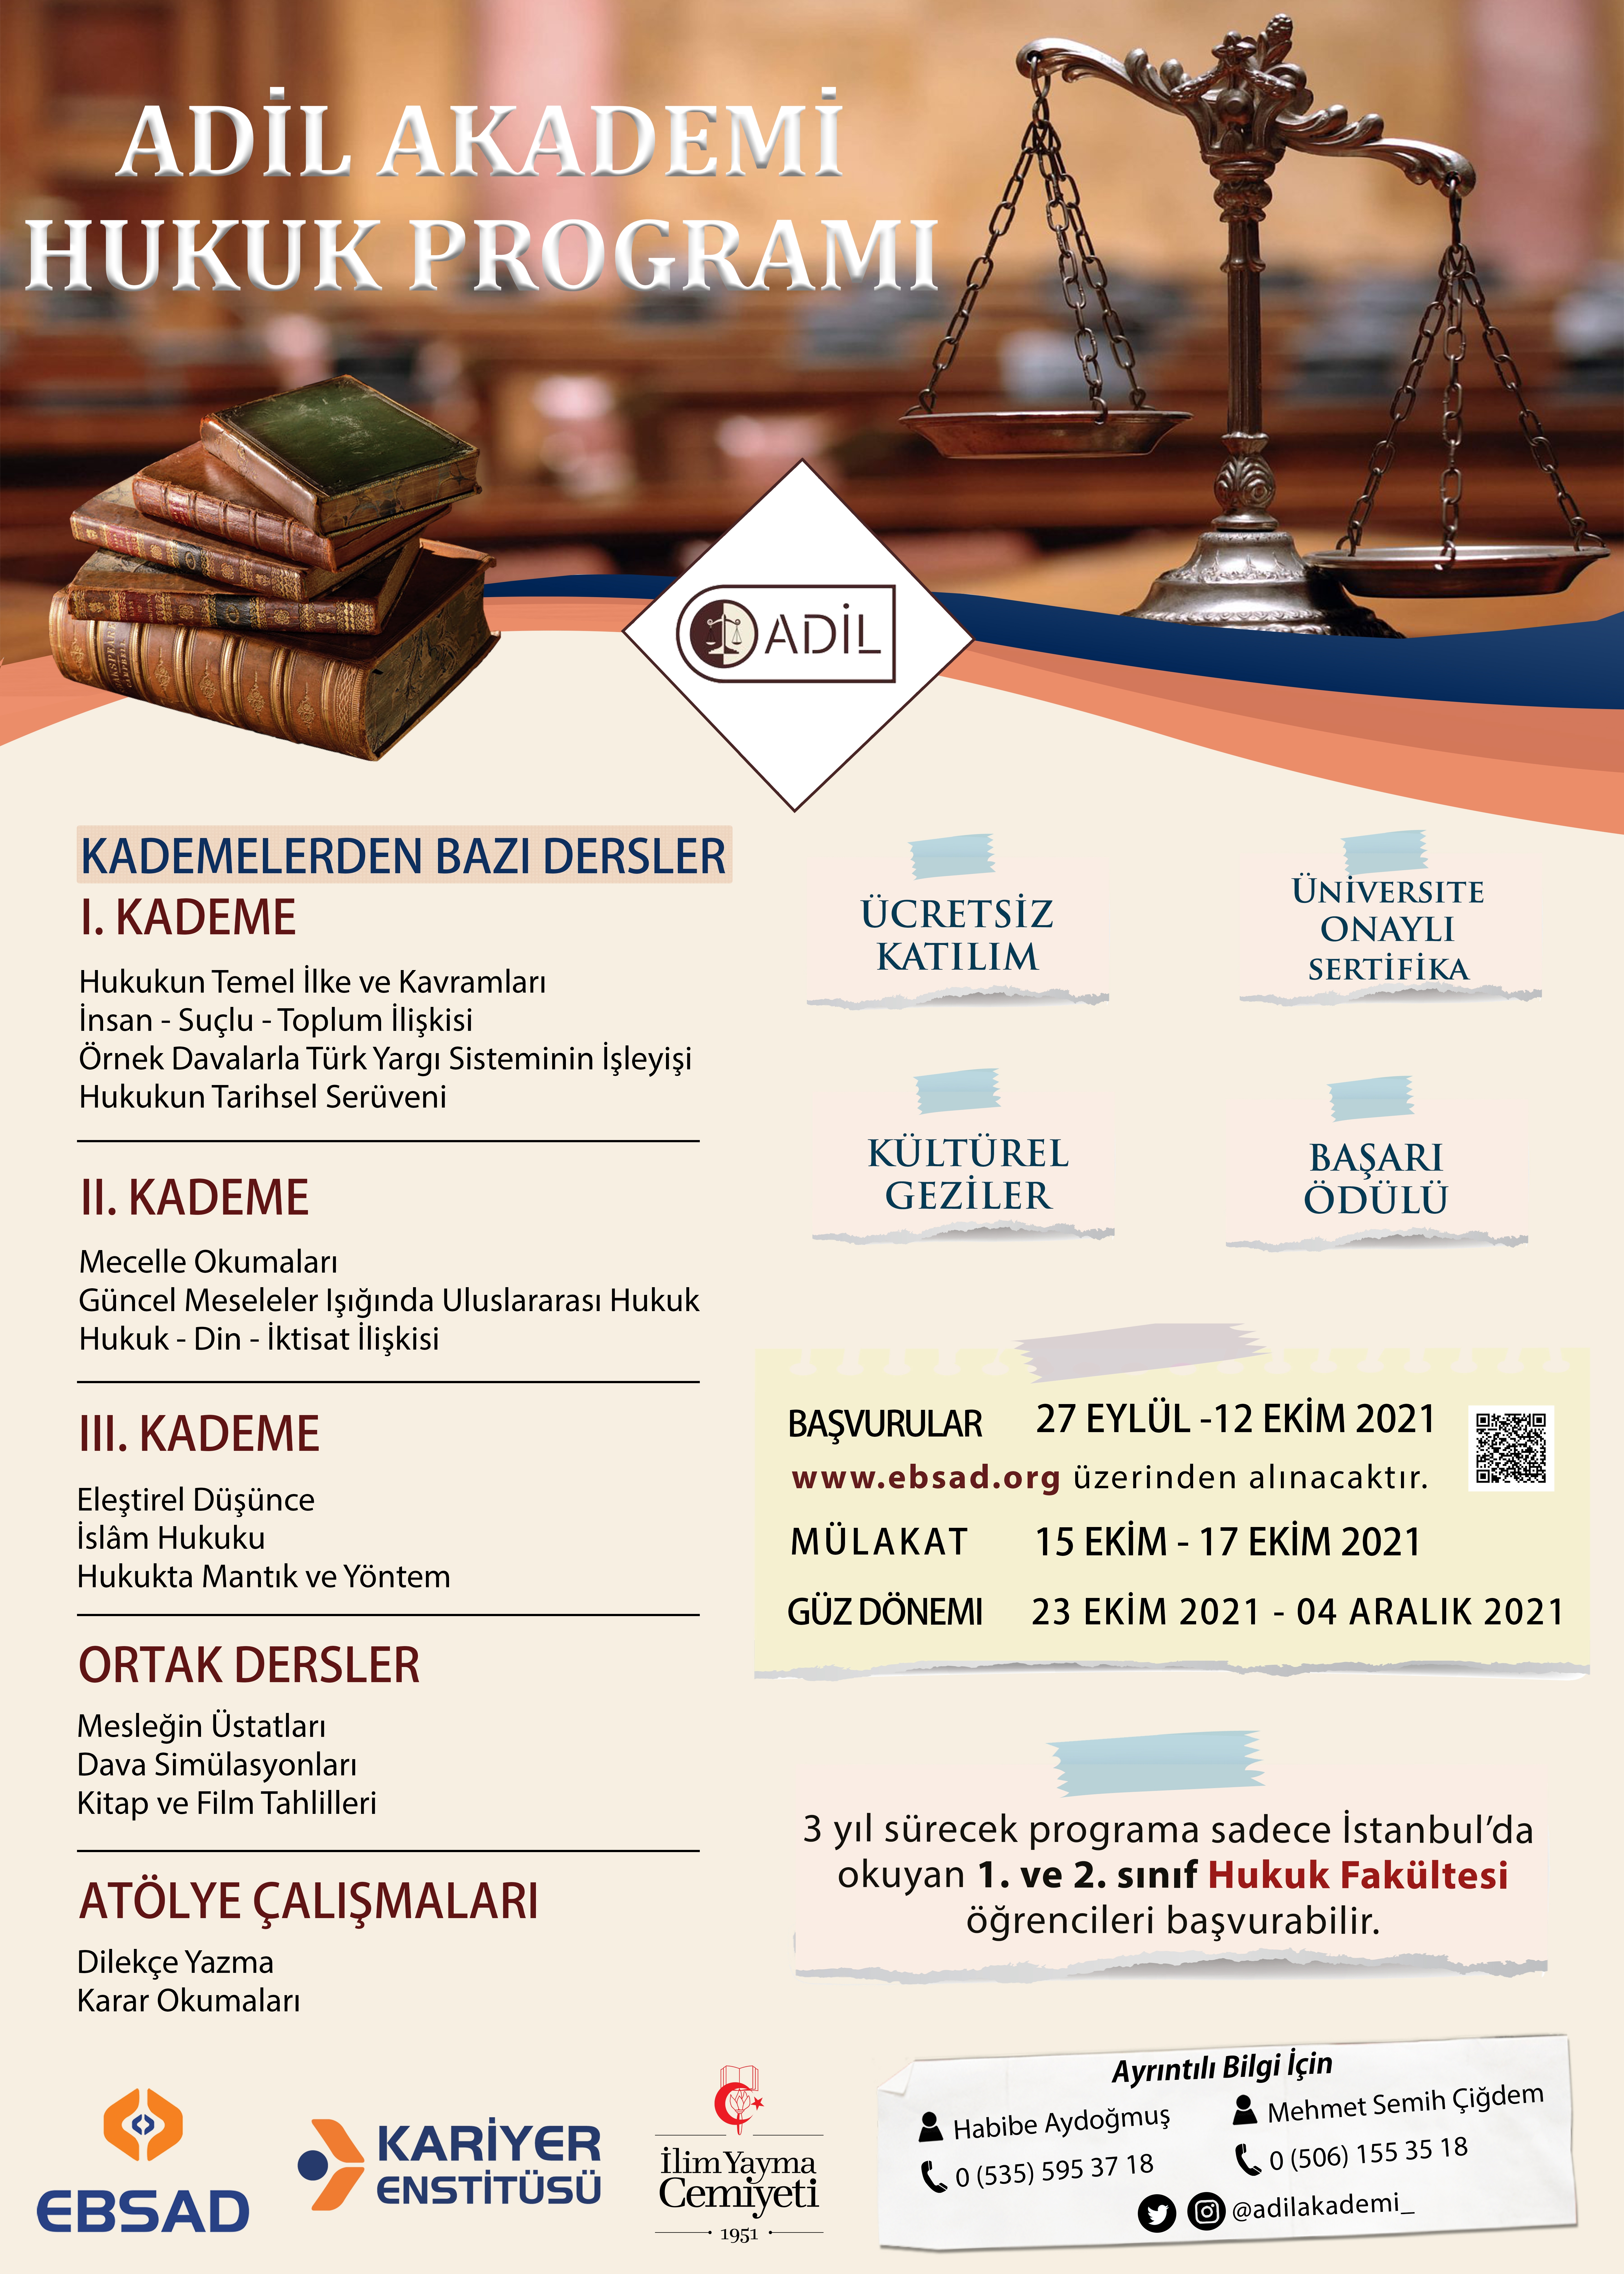 ADİL Hukuk Kariyer Programı - Ebsad - Eğitim Bilimleri ve Sosyal Araştırmalar Derneği